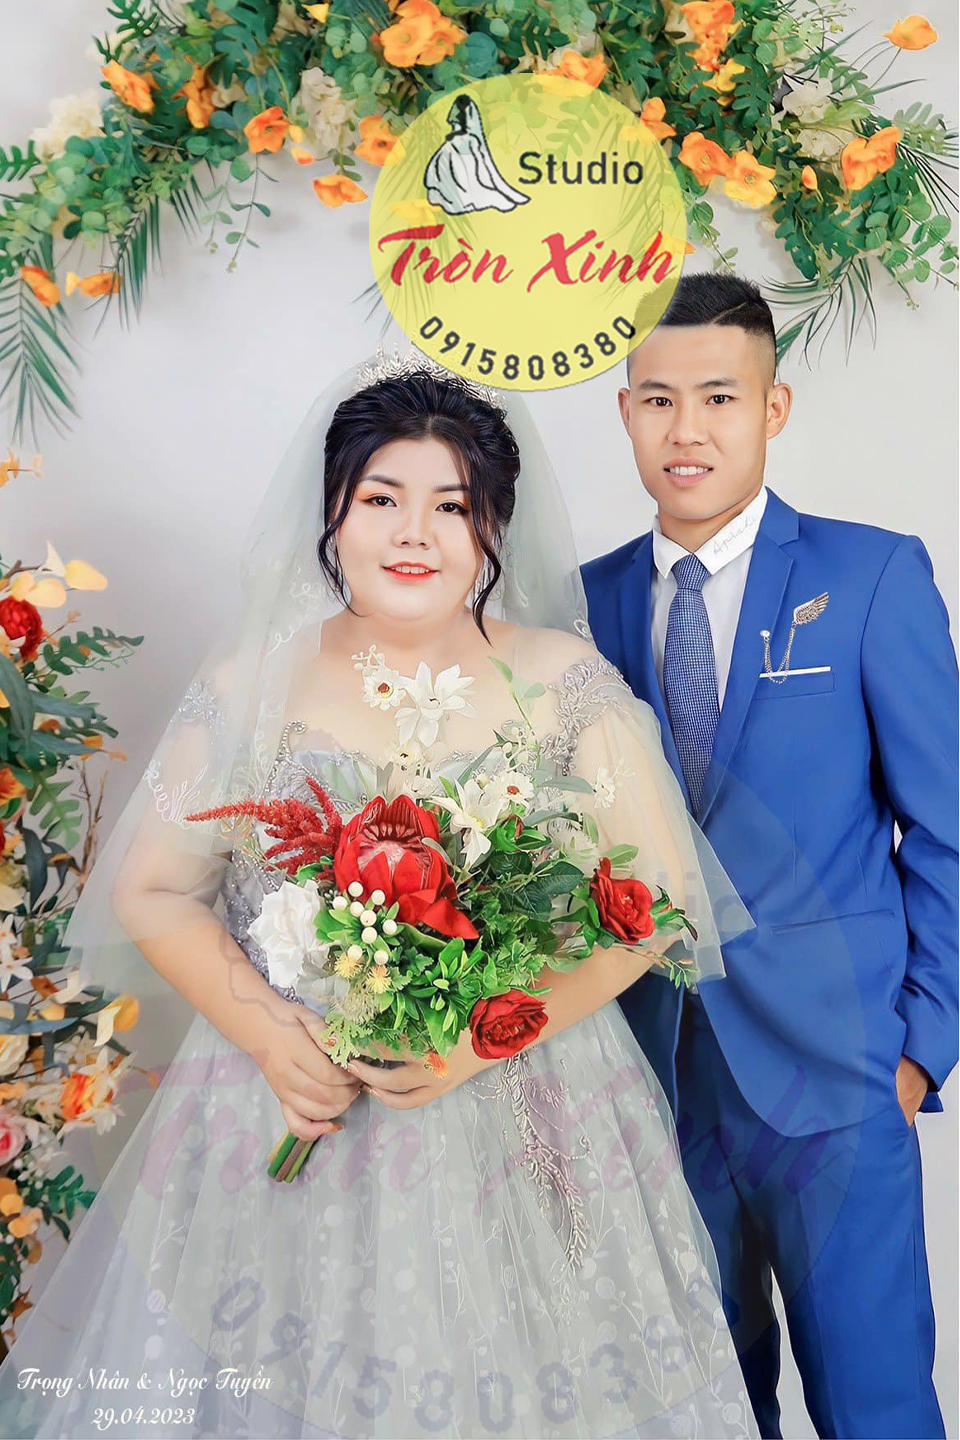 Áo cưới Bigsize Tròn Xinh siêu khuyến mãi 12.5